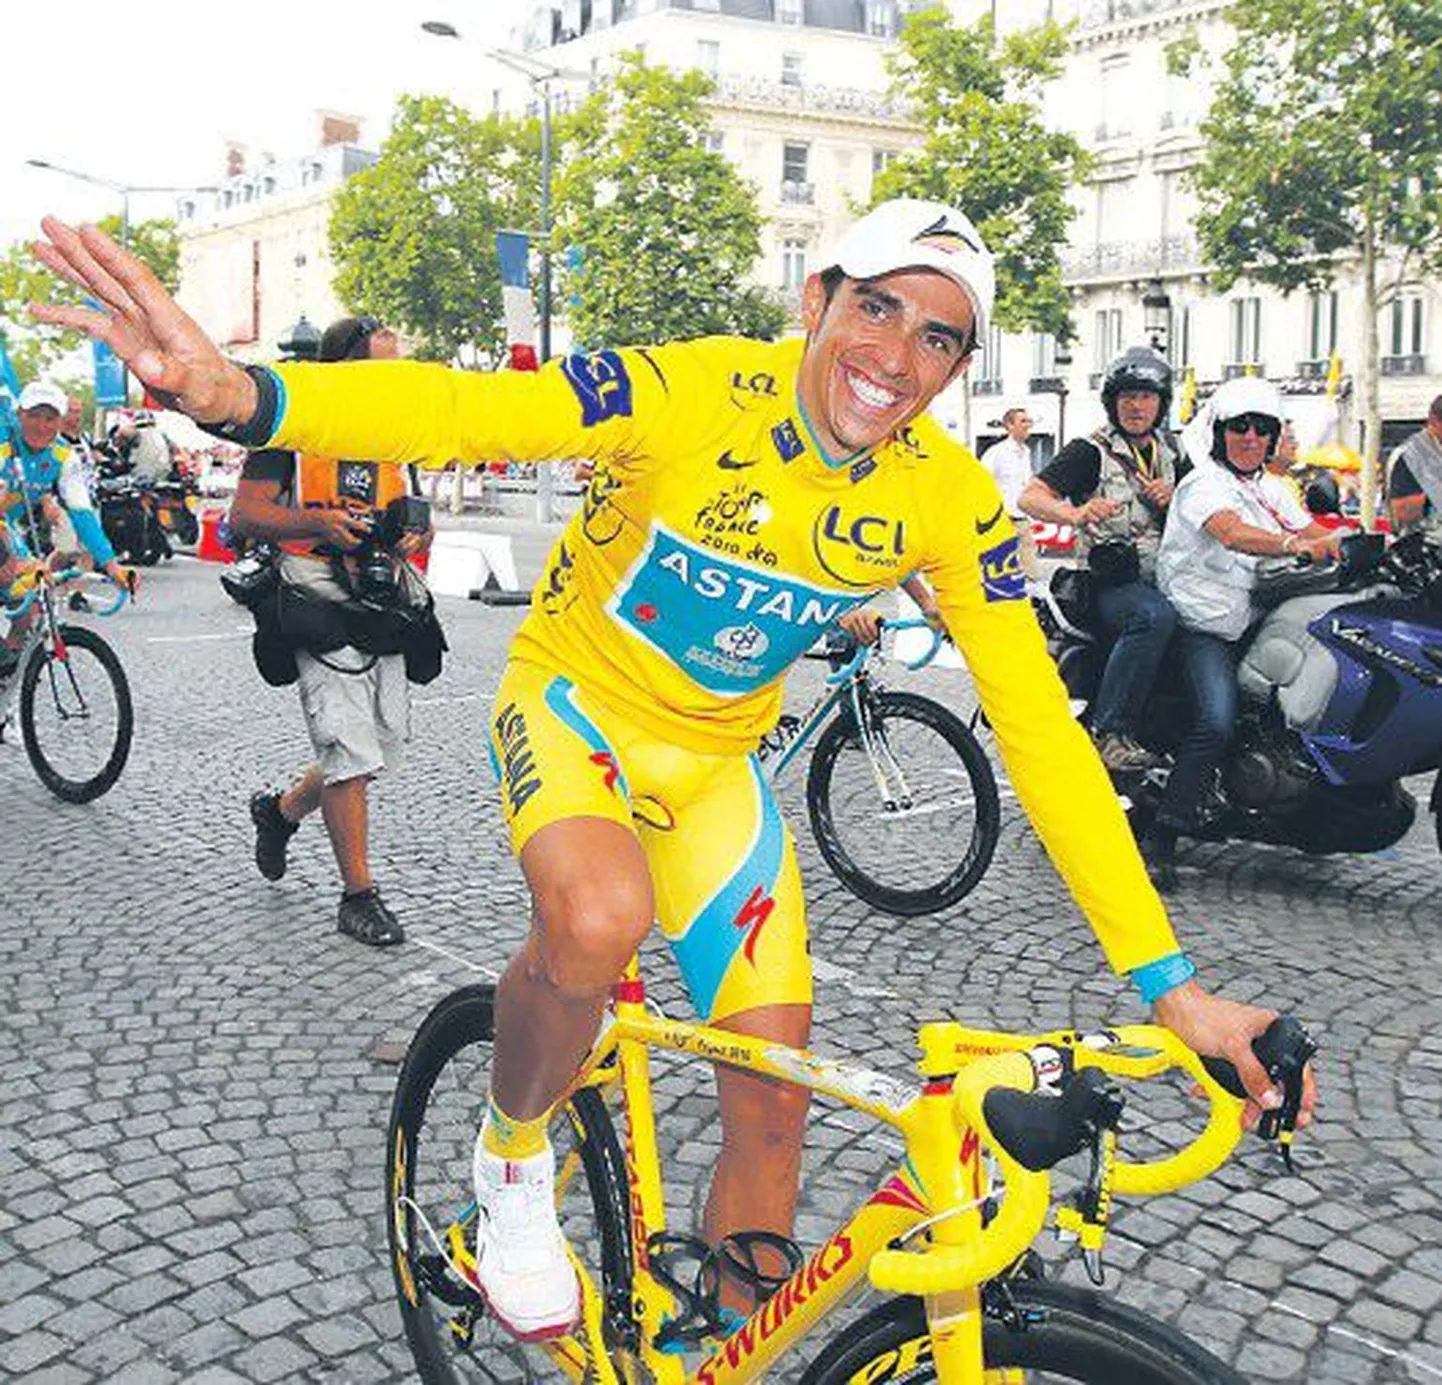 25 июля 2010 года испанца Альберто Контадора в желтой майке лидера восторженно встречали на Елисейских полях в Париже после победы в 97-й велогонке «Тур де Франс».